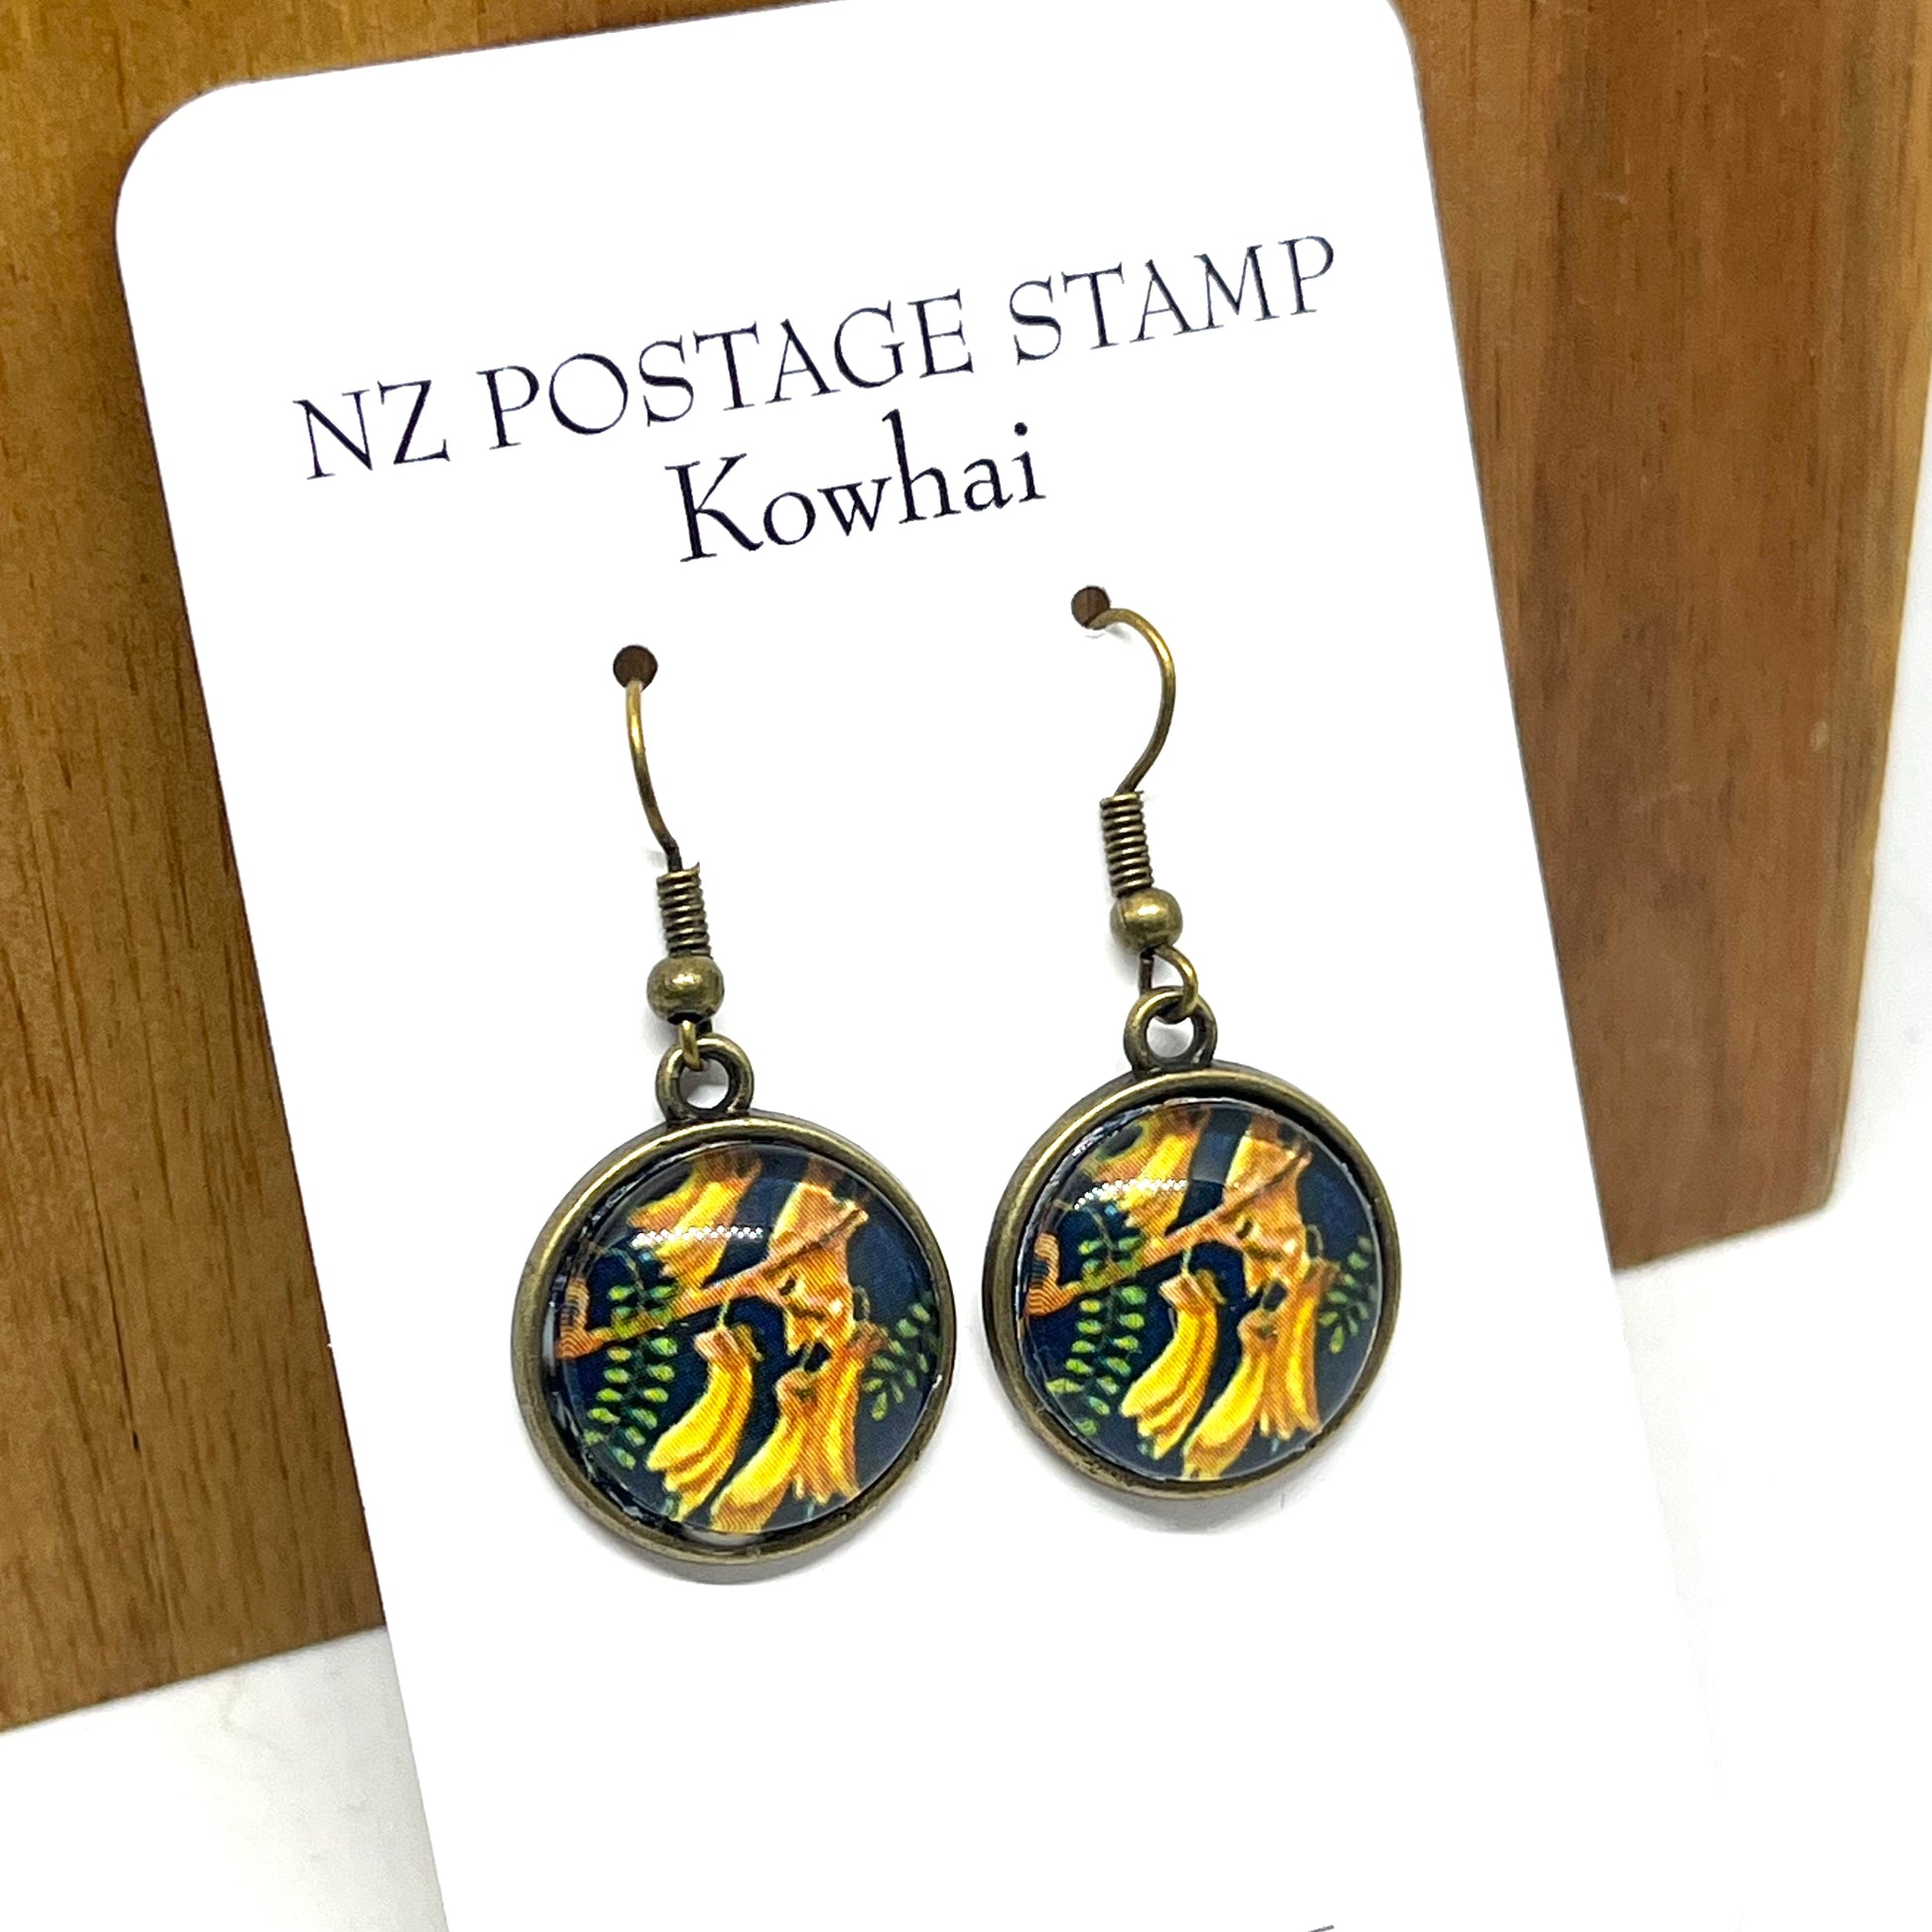 Kowhai stamp image on short bronze earring hooks